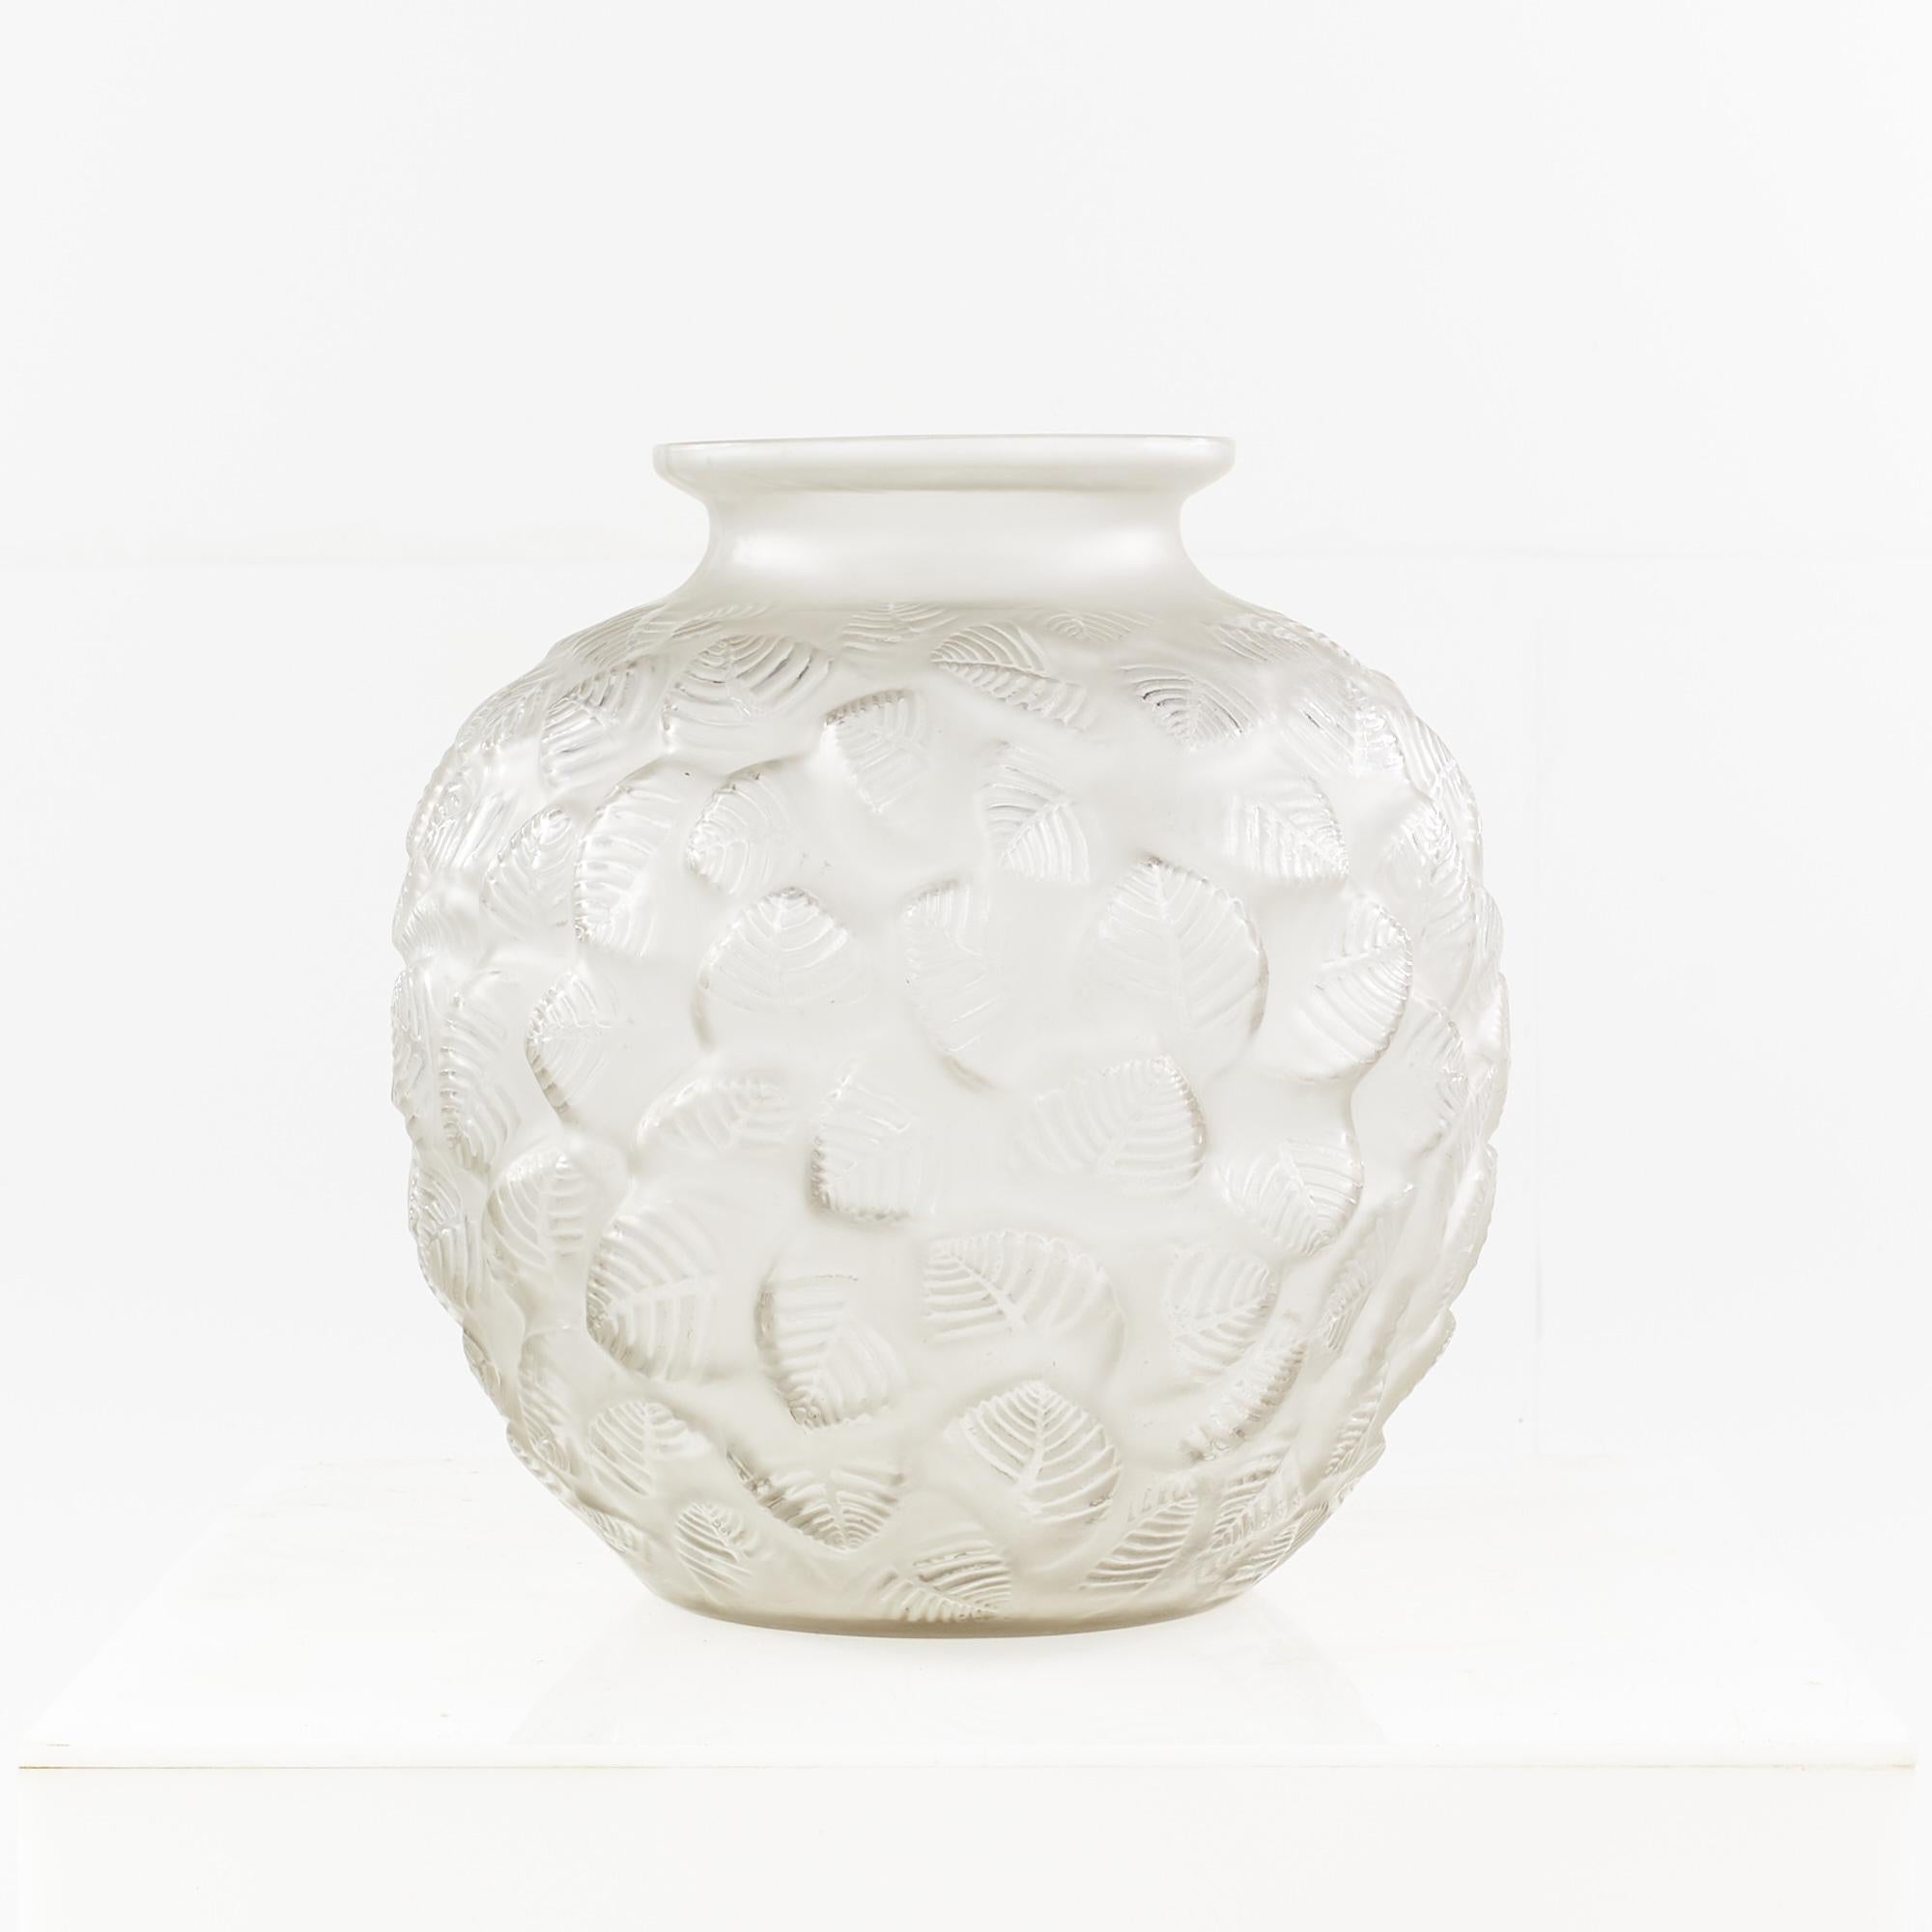 Rene Lalique Charmilles Vase

Diese Vase misst: 13 breit x 13 tief x 14 Zoll hoch  

Diese Vase ist in ausgezeichnetem Vintage-Zustand.

Wir machen unsere Fotos in einem Studio mit kontrollierter Beleuchtung, um so viele Details wie möglich zu